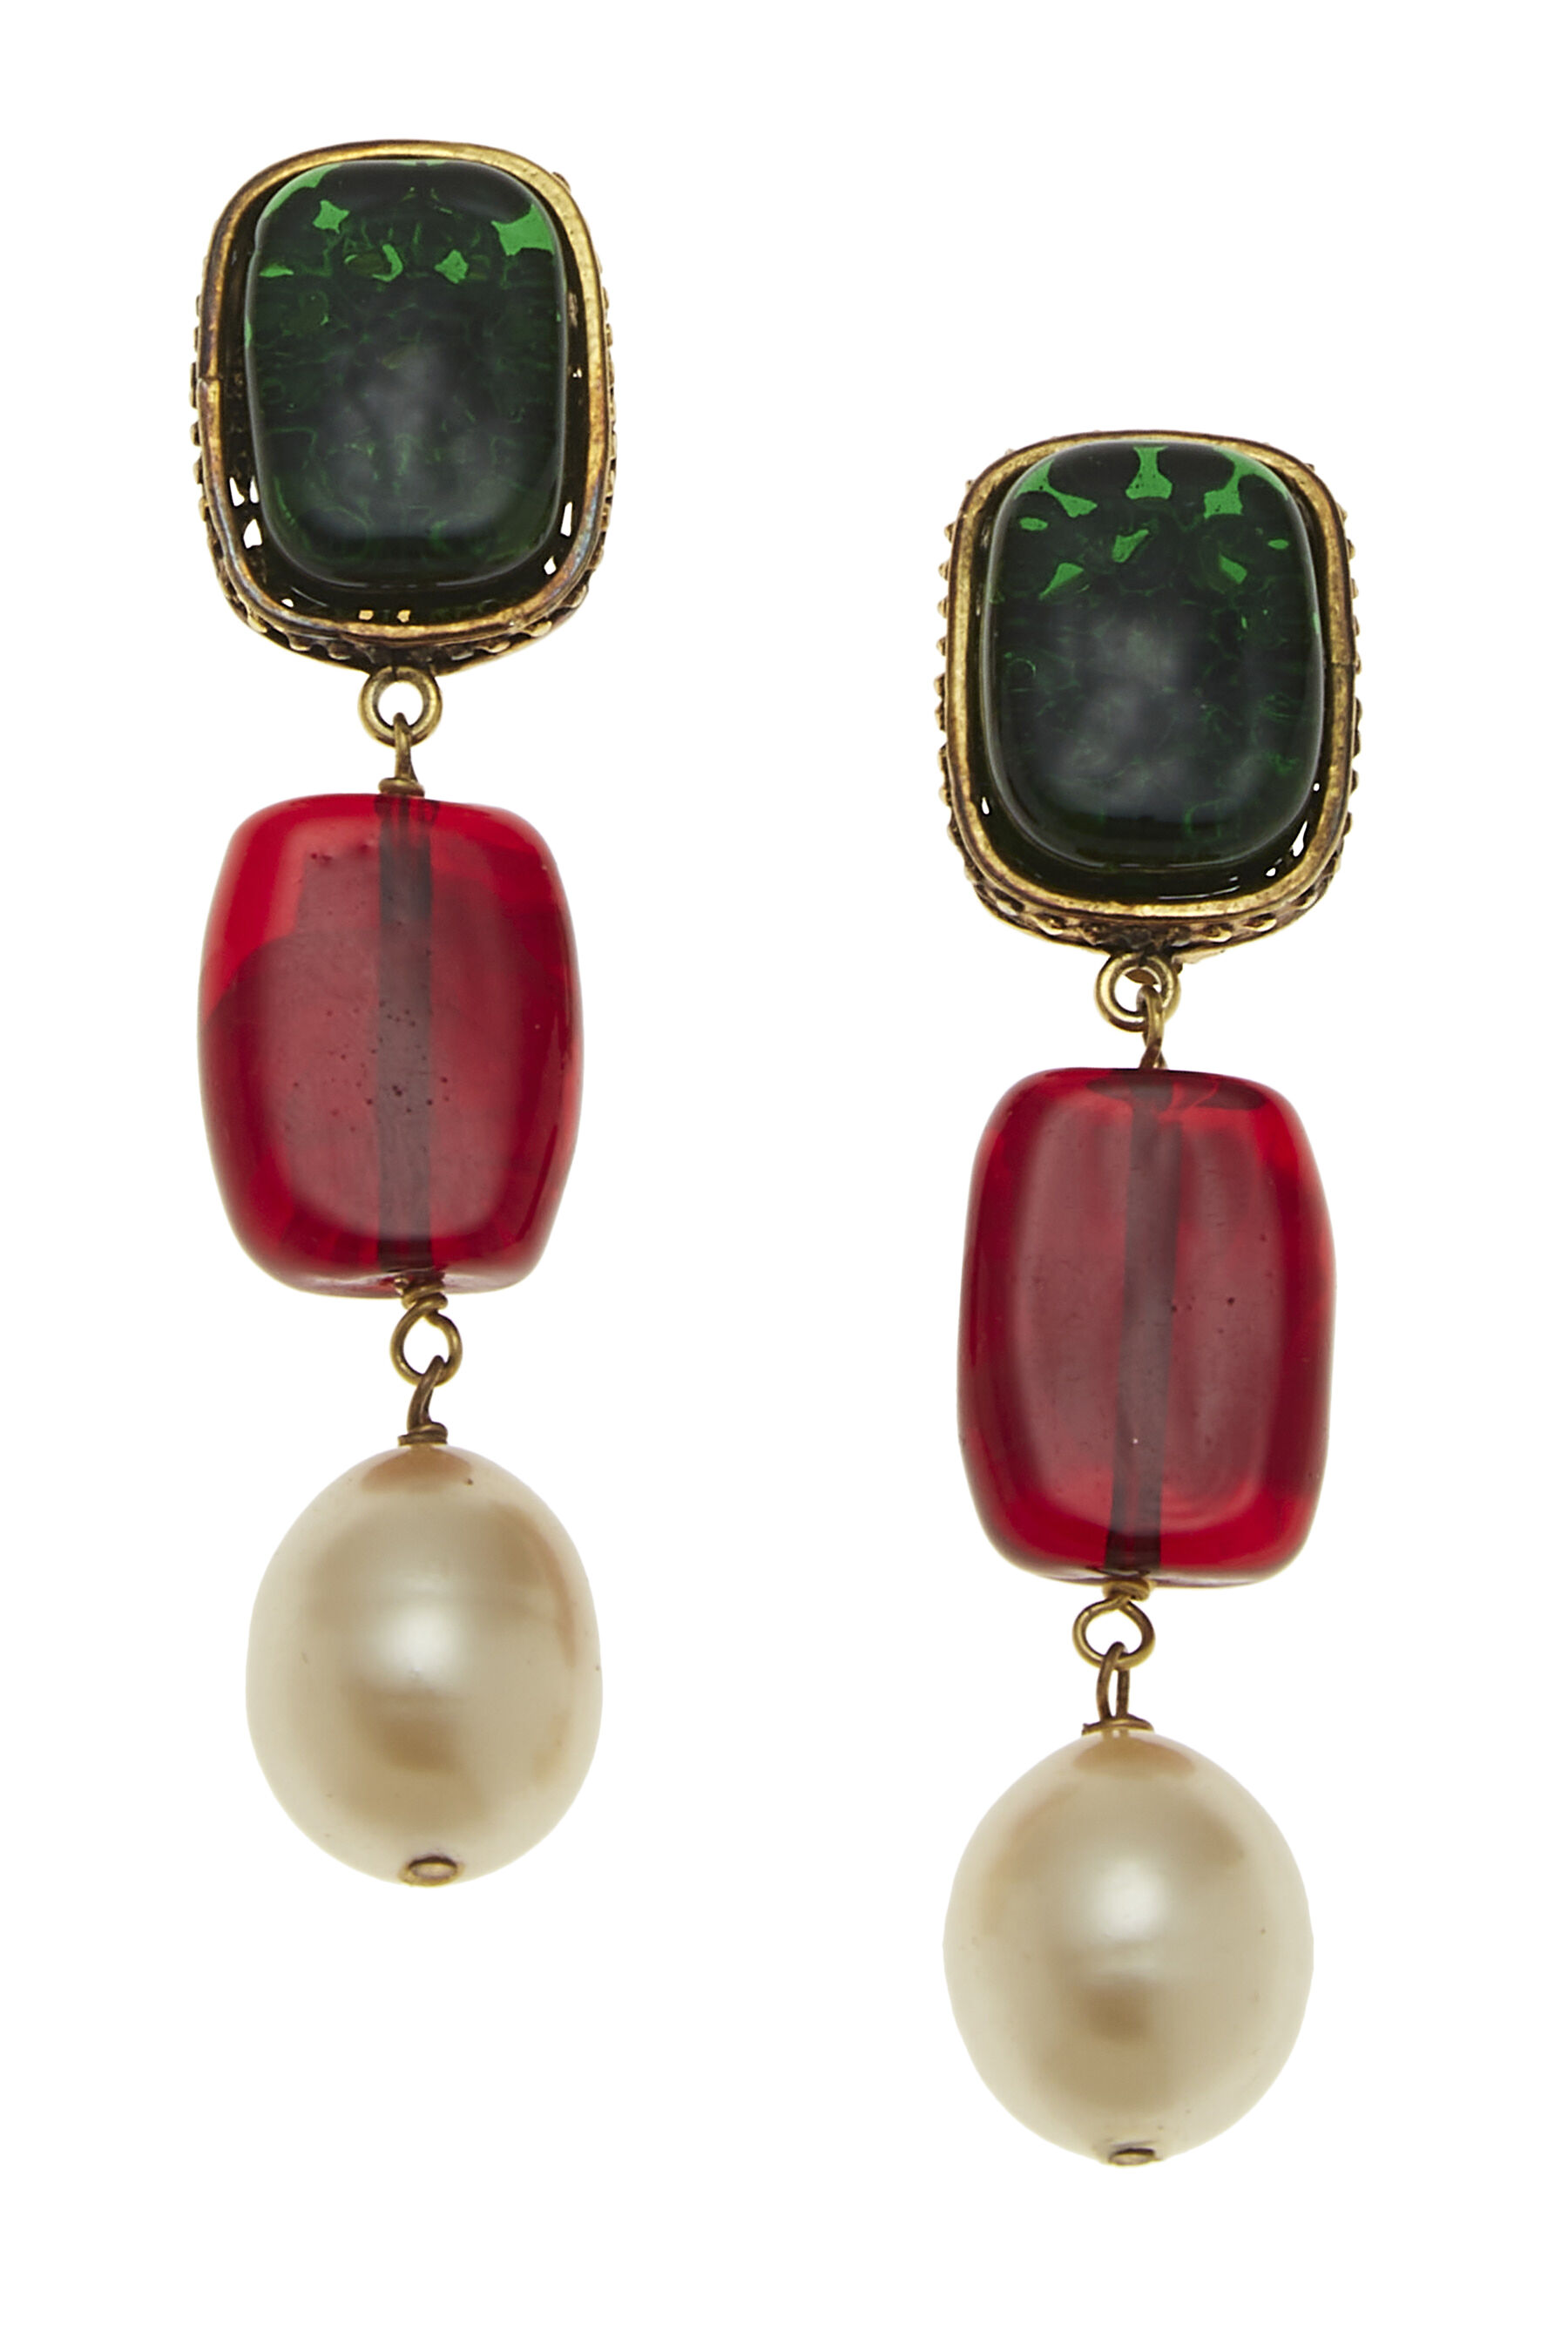 Chanel Black & Faux Pearl Dangle Earrings Q6JIKR17KH030